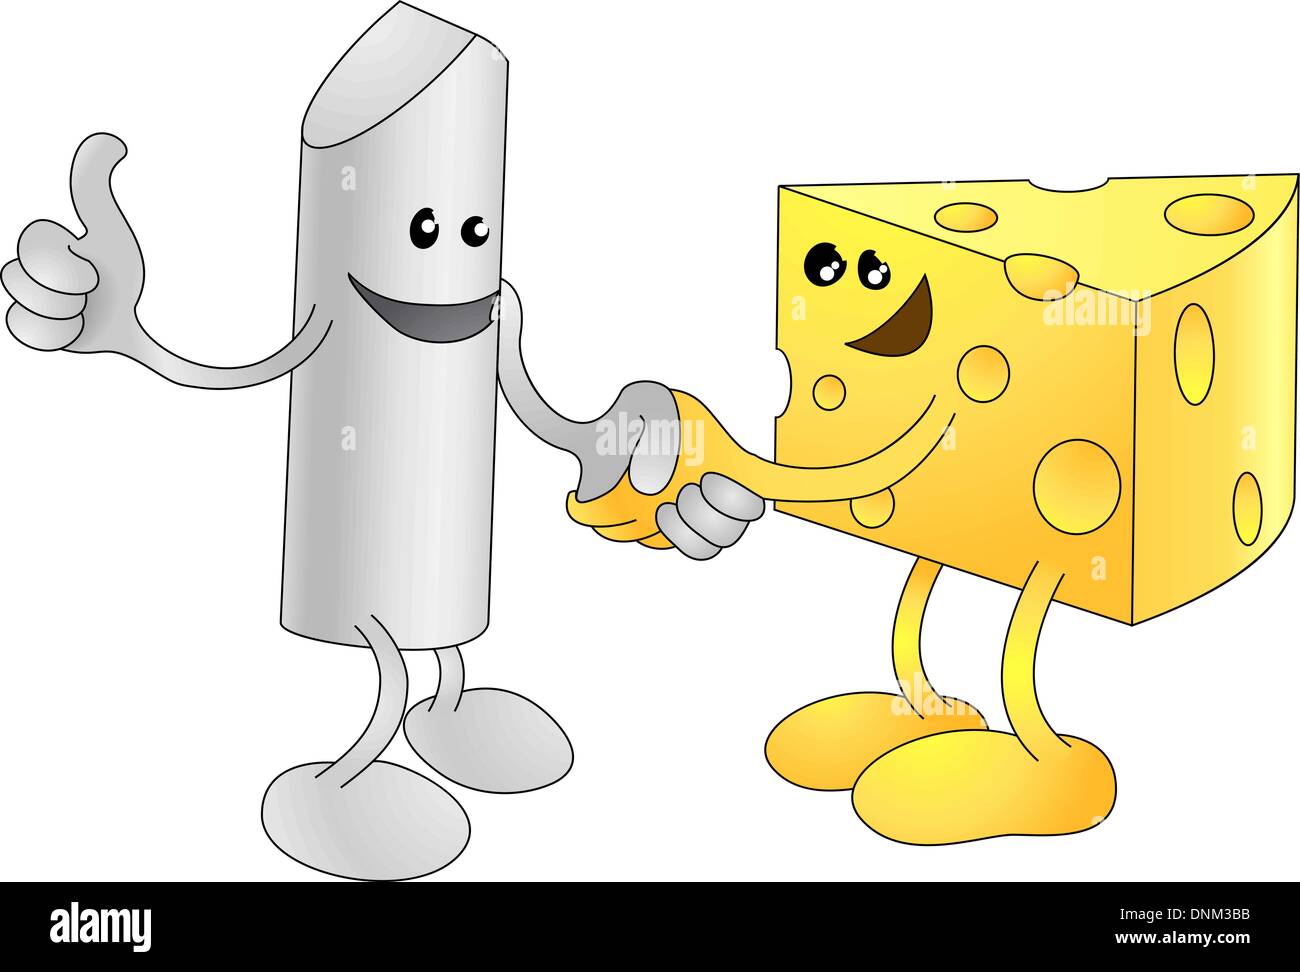 Un vettore concettuale illustrazione di gesso e formaggio stringono le mani. Gli opposti si attraggono, o diversi ma uguali, o forse un tuffo Illustrazione Vettoriale